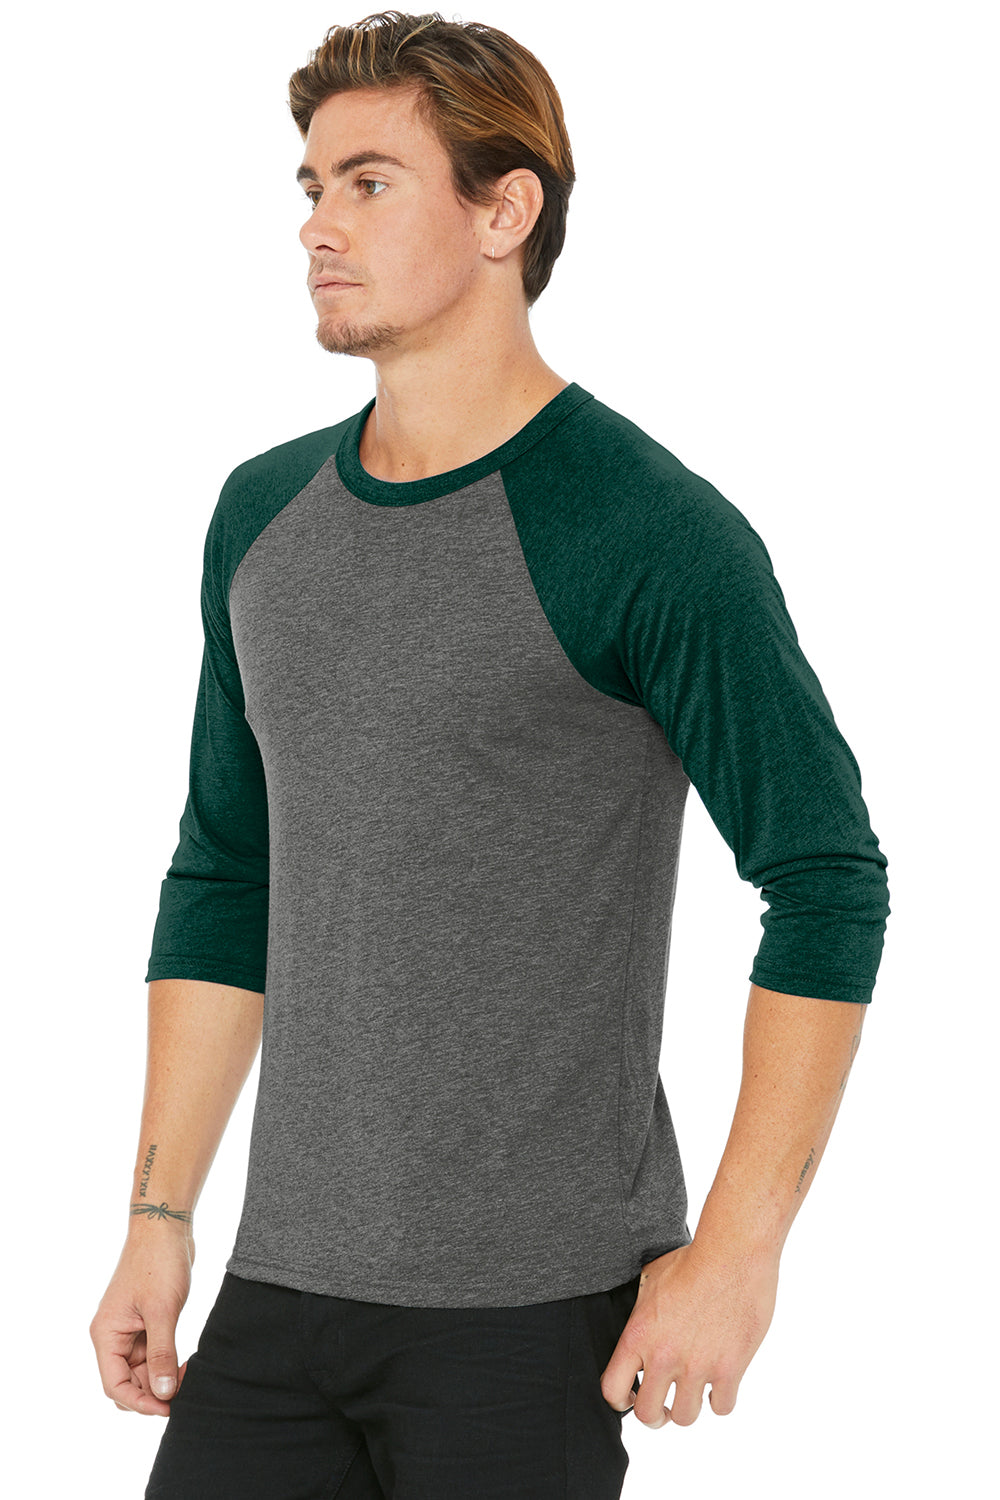 Bella + Canvas BC3200/3200 Mens 3/4 Sleeve Crewneck T-Shirt Grey/Emerald Green Model 3Q